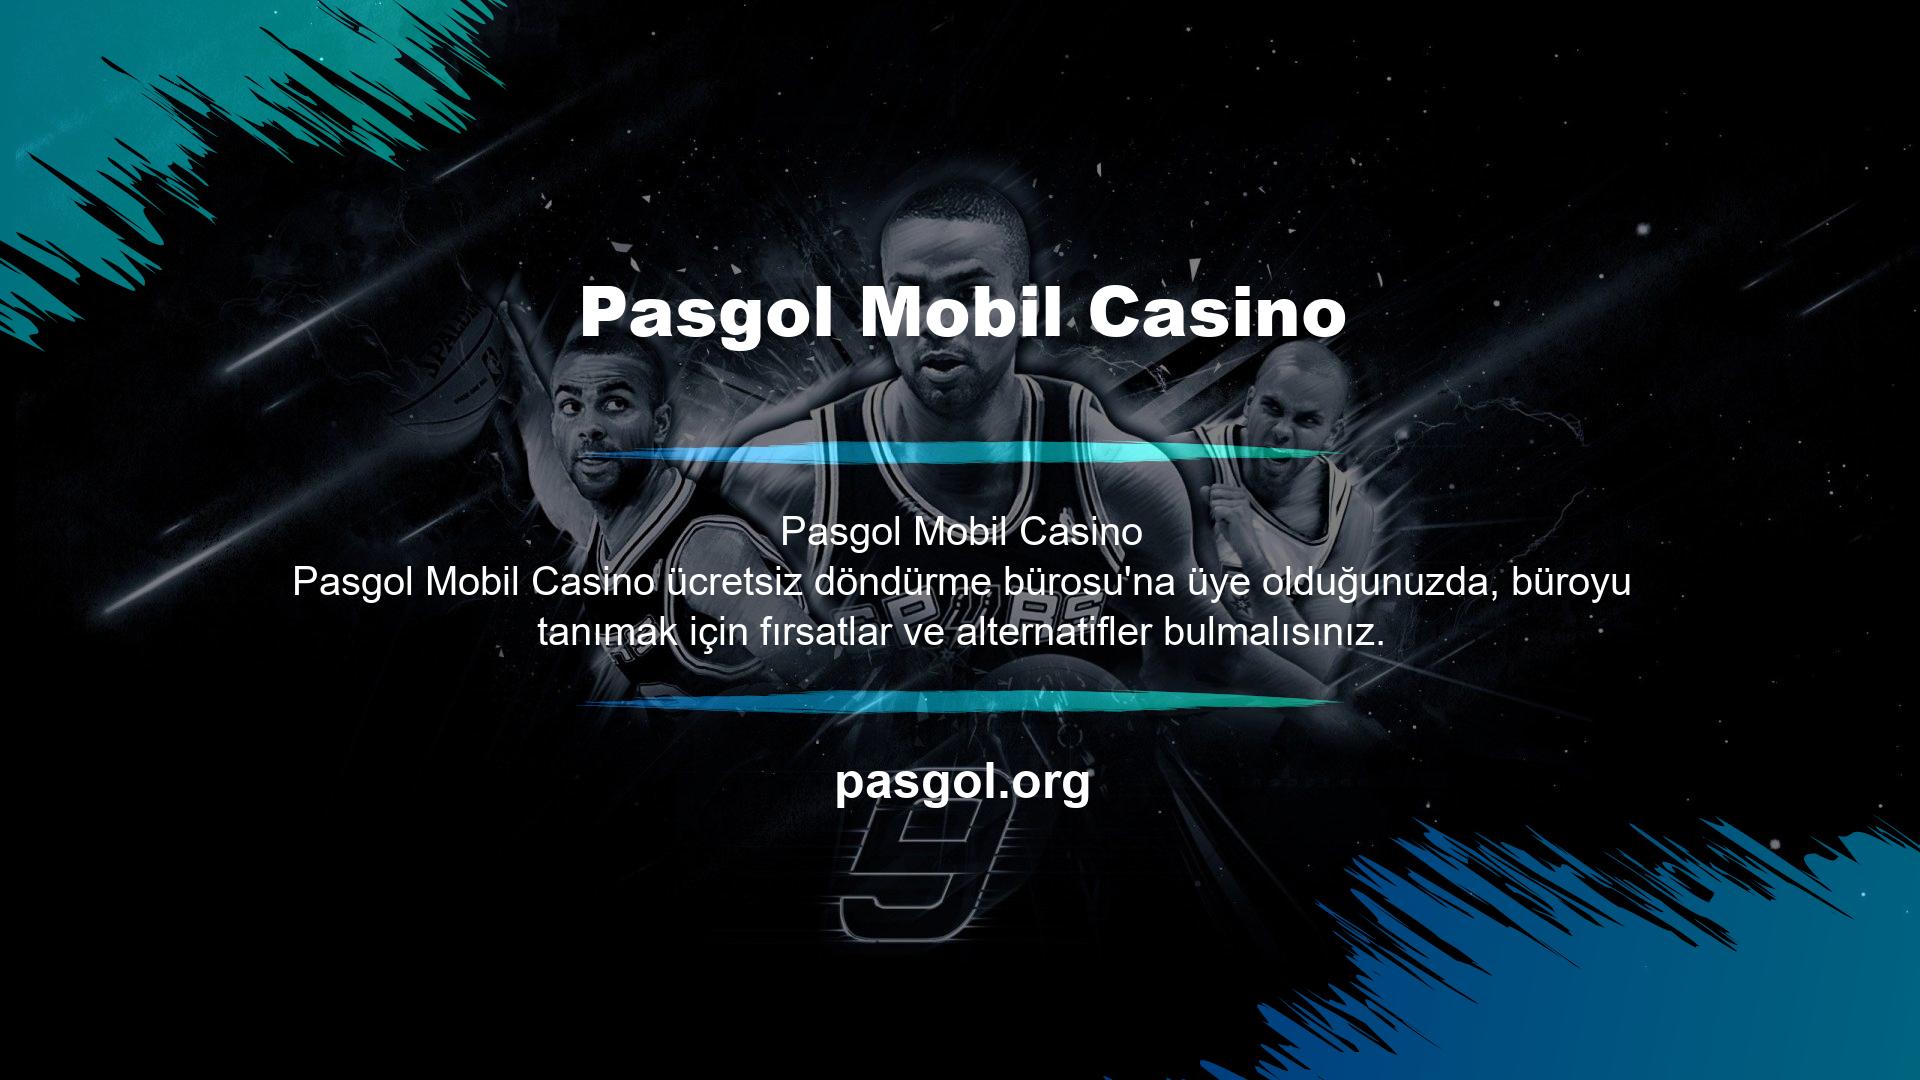 Bu noktada Pasgol mobil casino bedava çevirme seçeneği üyeler için cazip bir fırsattır